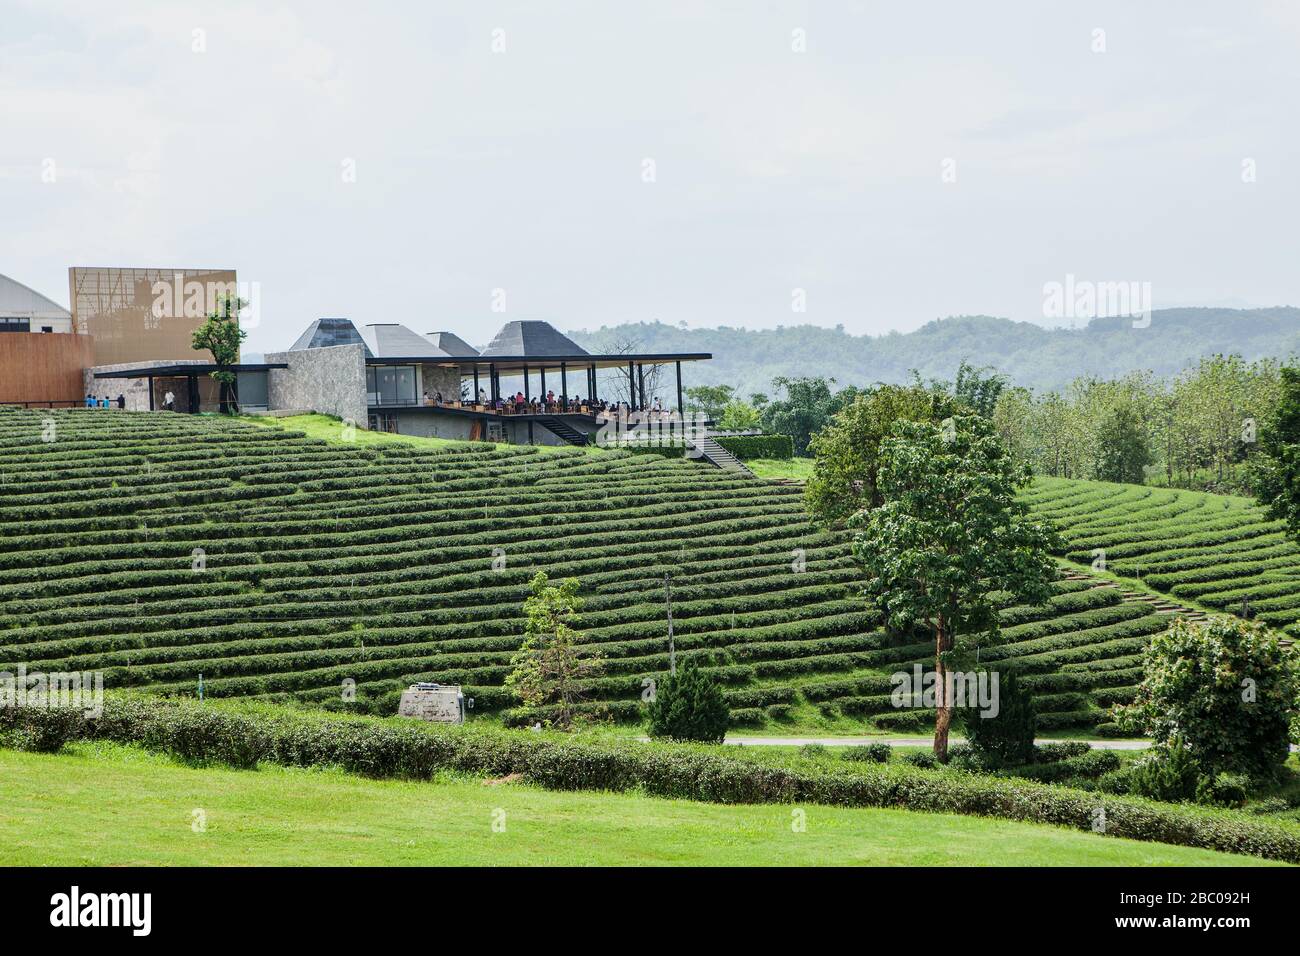 Choui Fong Tea cresce diversi tipi distintivi di tè come Assum, Green, Oolong e Black Tea nelle Highlands ad un'altitudine di circa 1200 mtres. Foto Stock